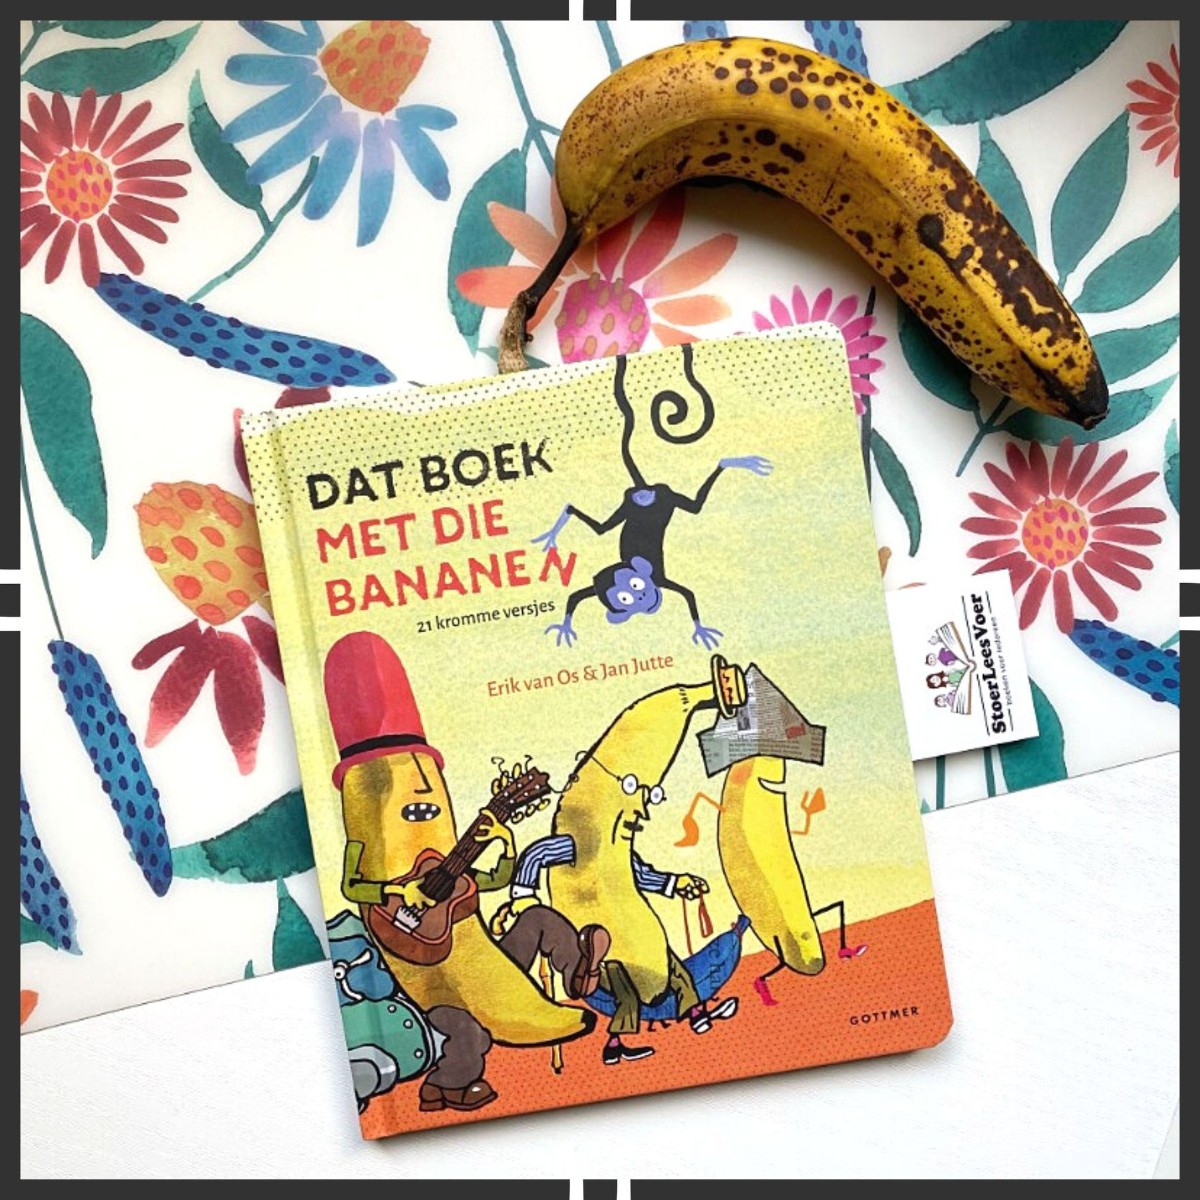 dat boek met die bananen voorkant cover kader versjes kinderboekenweek groep 1 2 kerntitel humor erik van os jan jutte gottmer